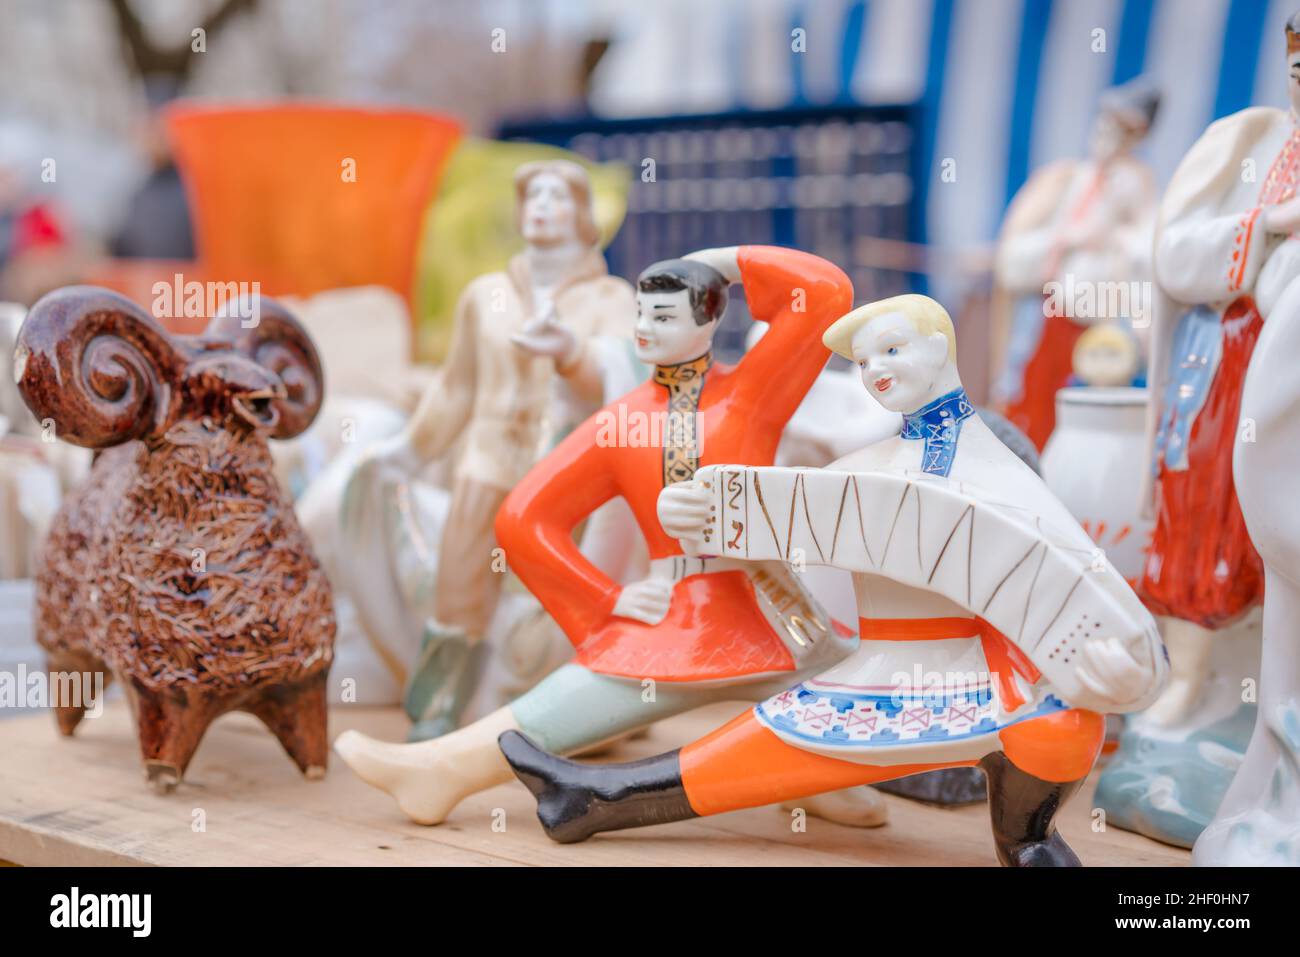 Figurine vintage in porcellana sul mercato delle pulci. Vecchie figurine sovietiche dall'urss, oggetti da collezione memorabilia concetto. Oggetti decorativi vintage in vendita garage Foto Stock